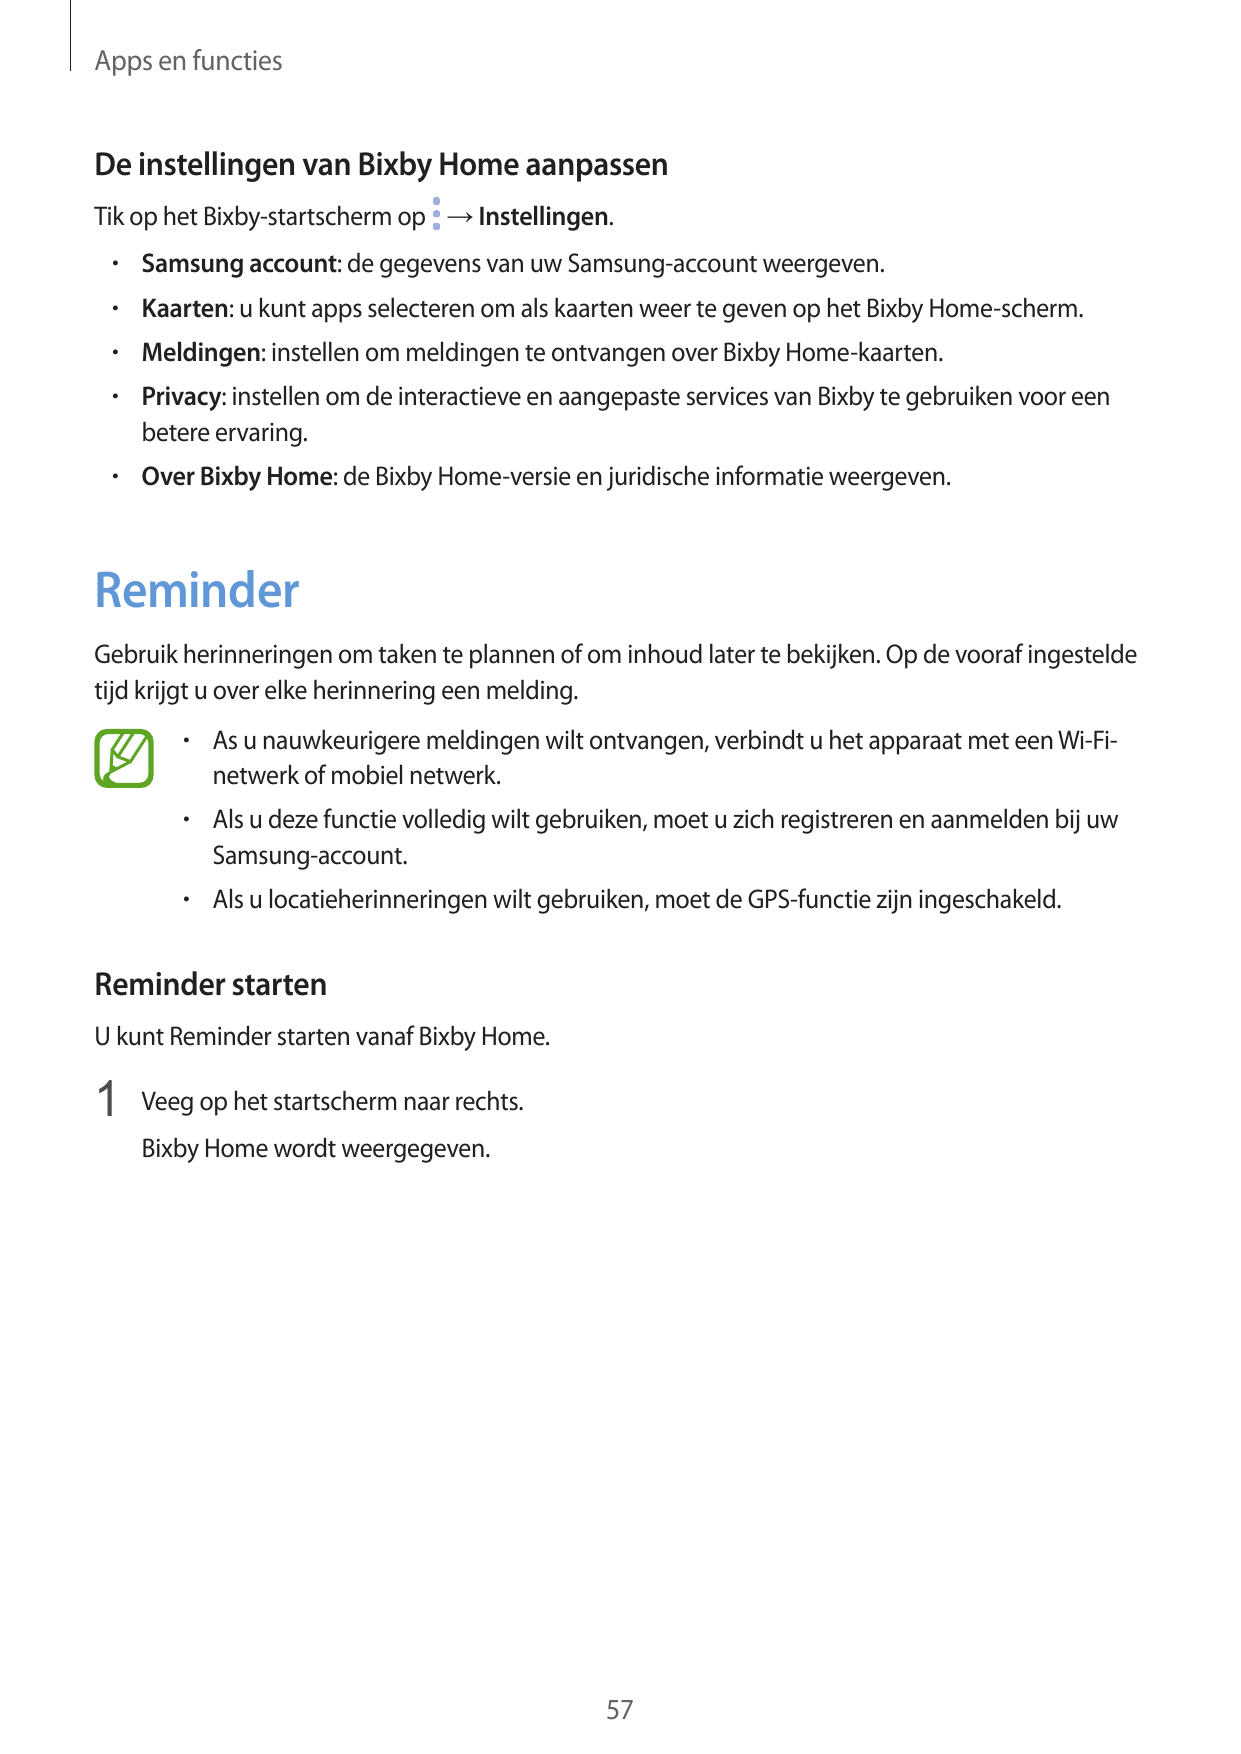 Apps en functiesDe instellingen van Bixby Home aanpassenTik op het Bixby-startscherm op → Instellingen.• Samsung account: de geg